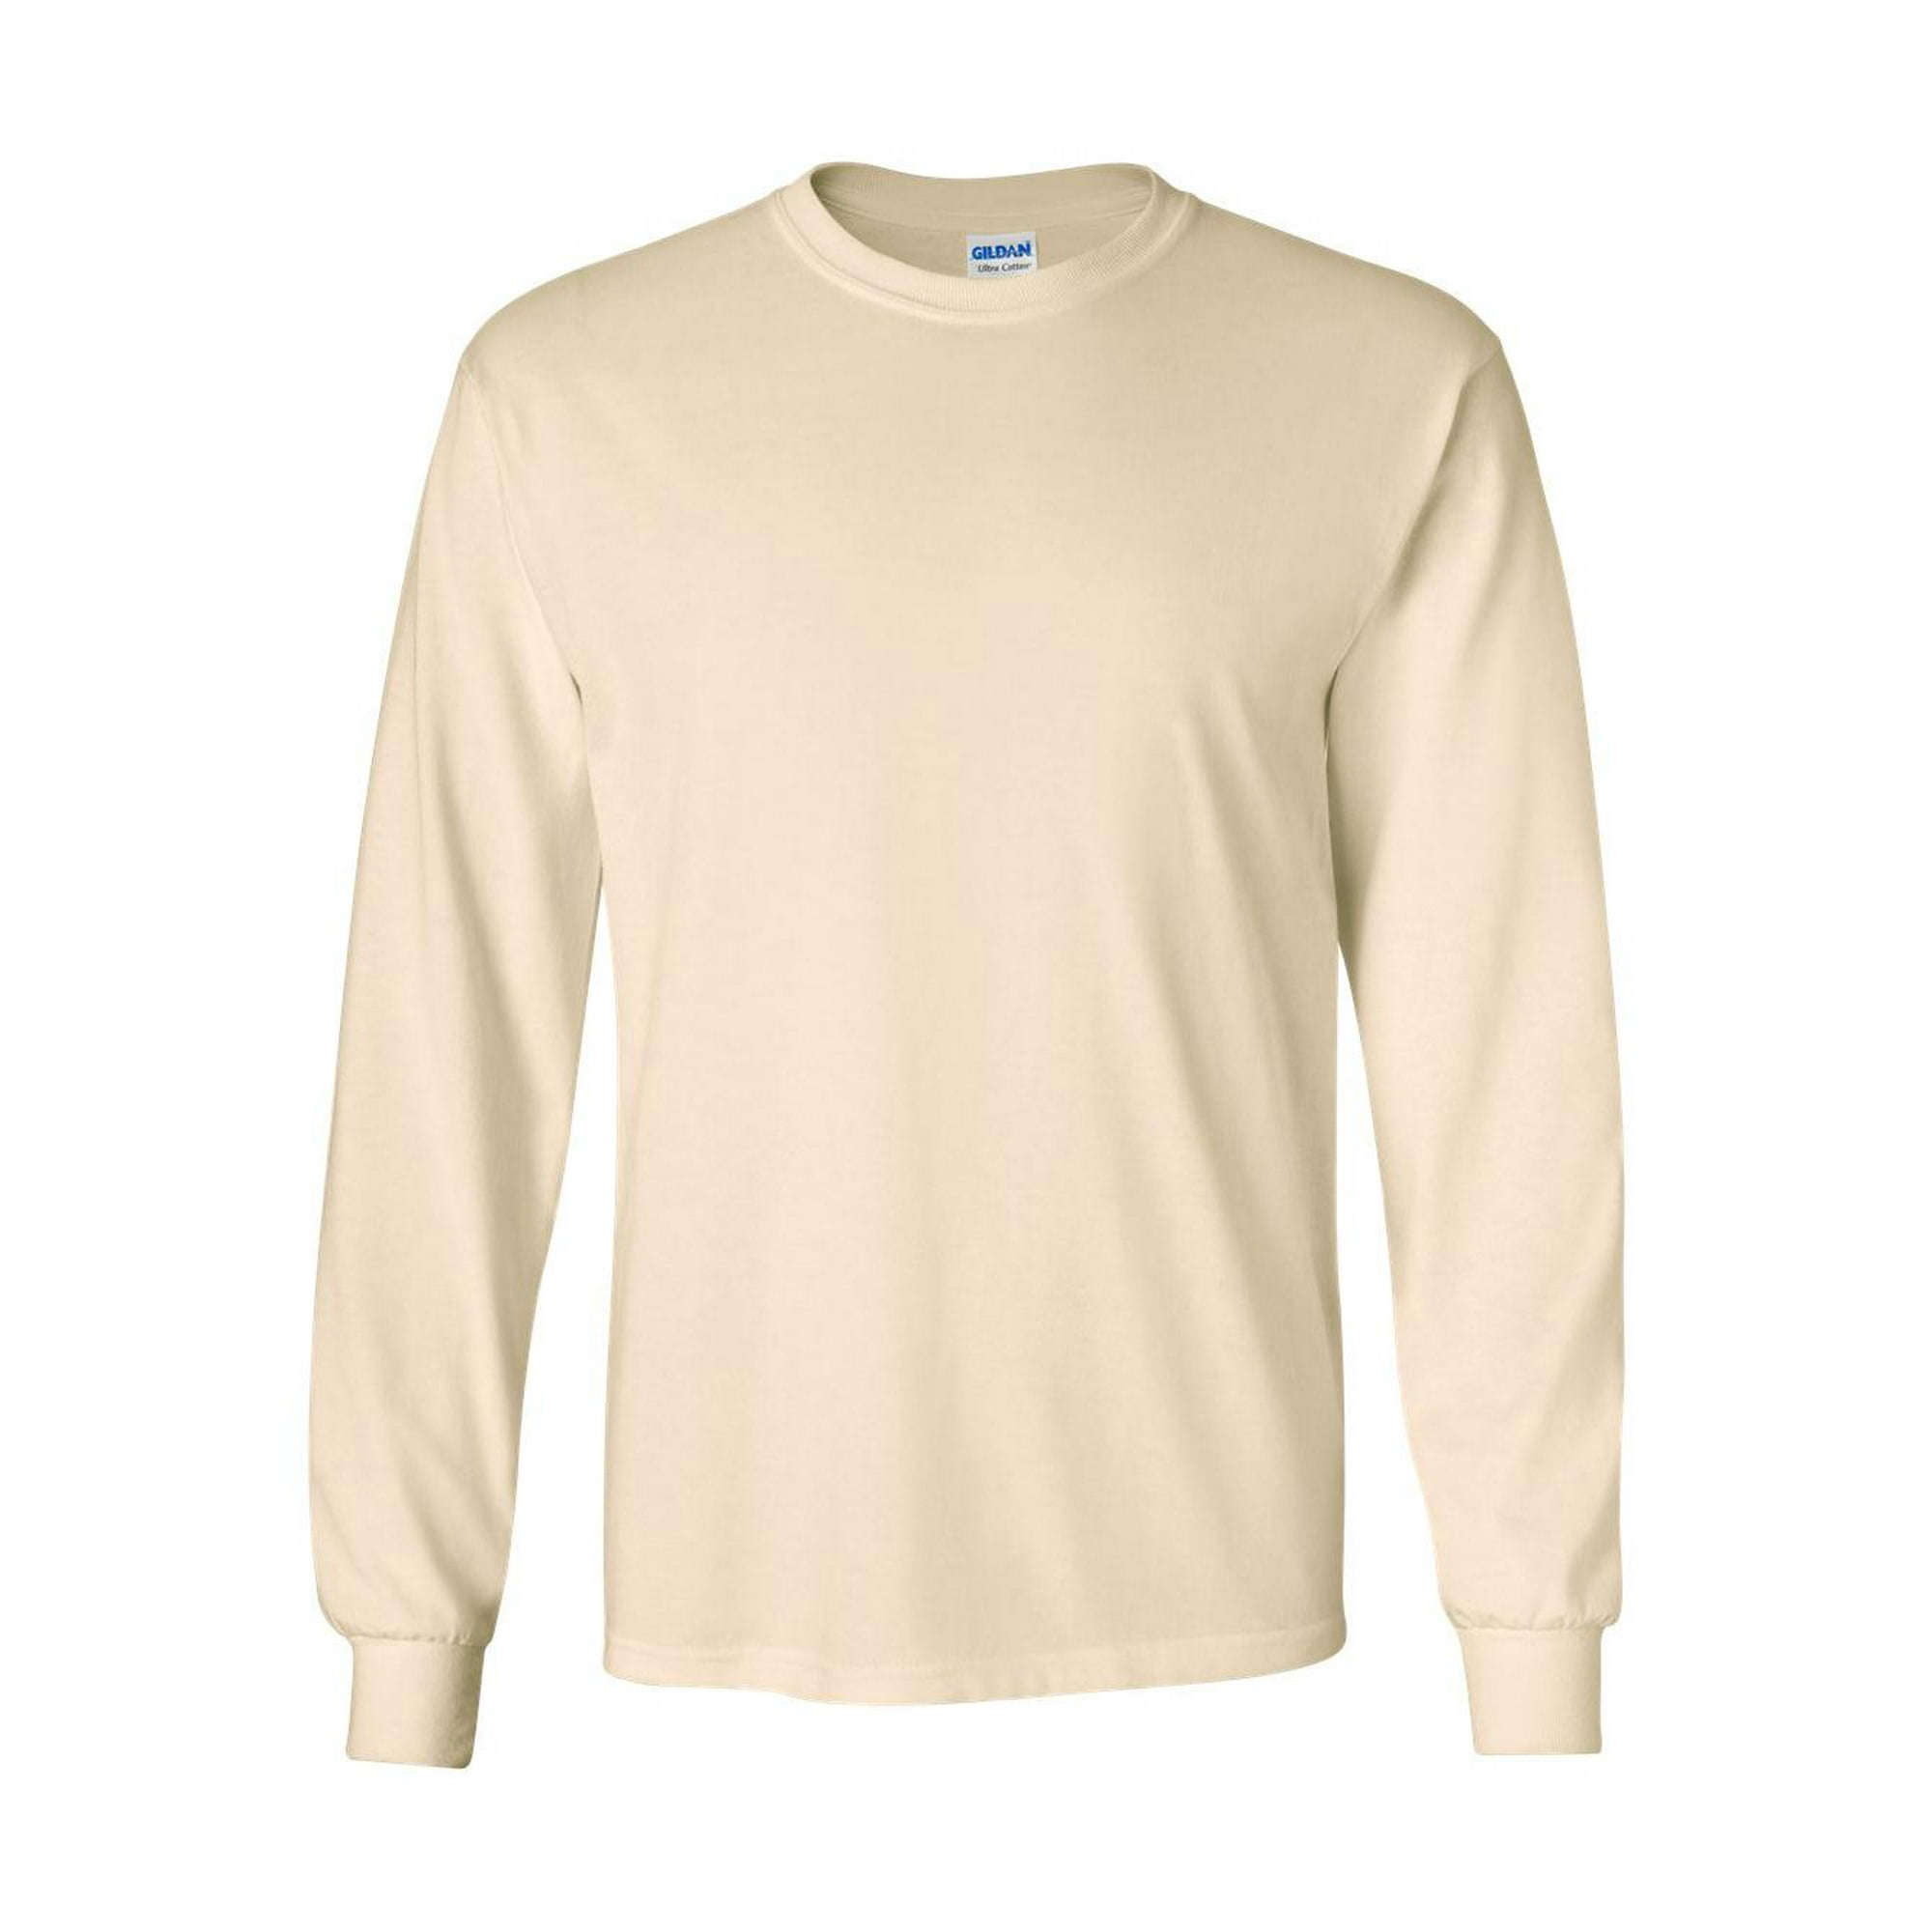 Gildan Men's 2400 Ultra Cotton Long Sleeve T-Shirt